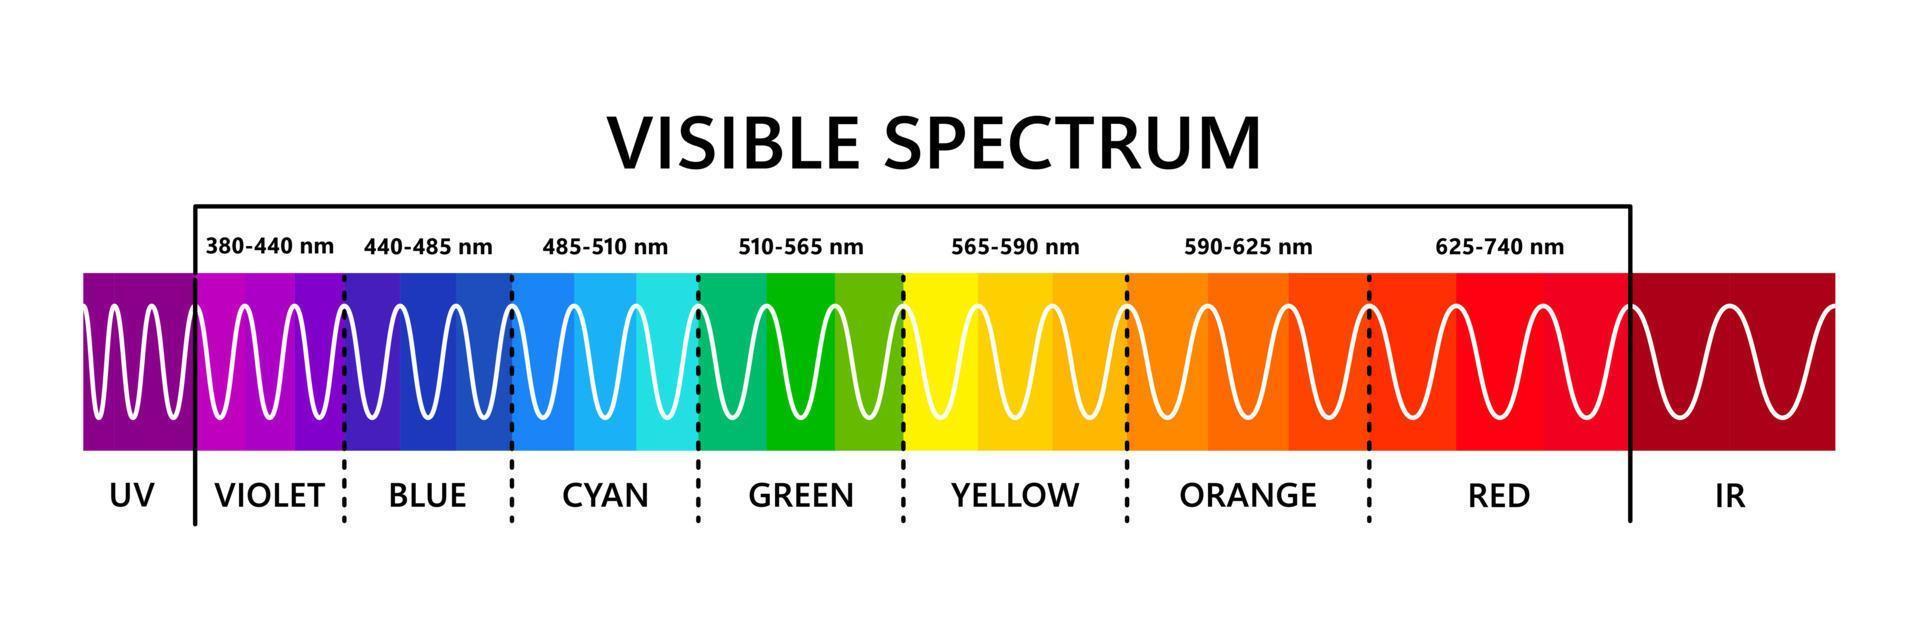 spectre de la lumière visible, infrarouge et ultraviolet. longueur d'onde de la lumière optique. spectre de couleurs visible électromagnétique pour l'œil humain. diagramme de gradient. illustration vectorielle éducative sur fond blanc vecteur